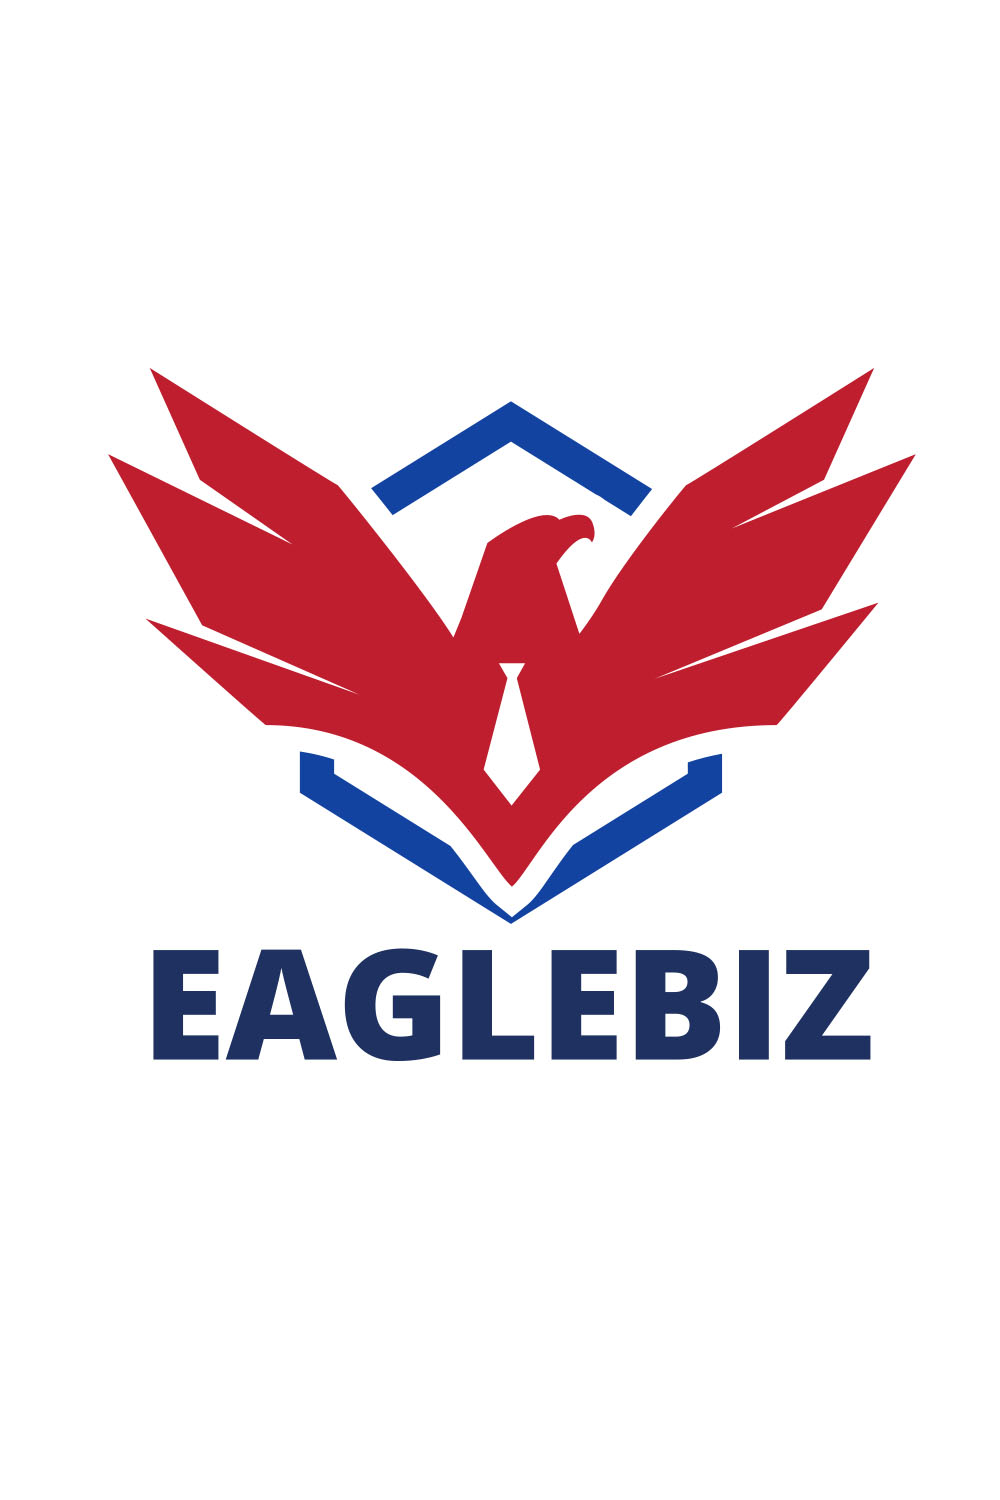 Eaglebiz logo design pinterest preview image.